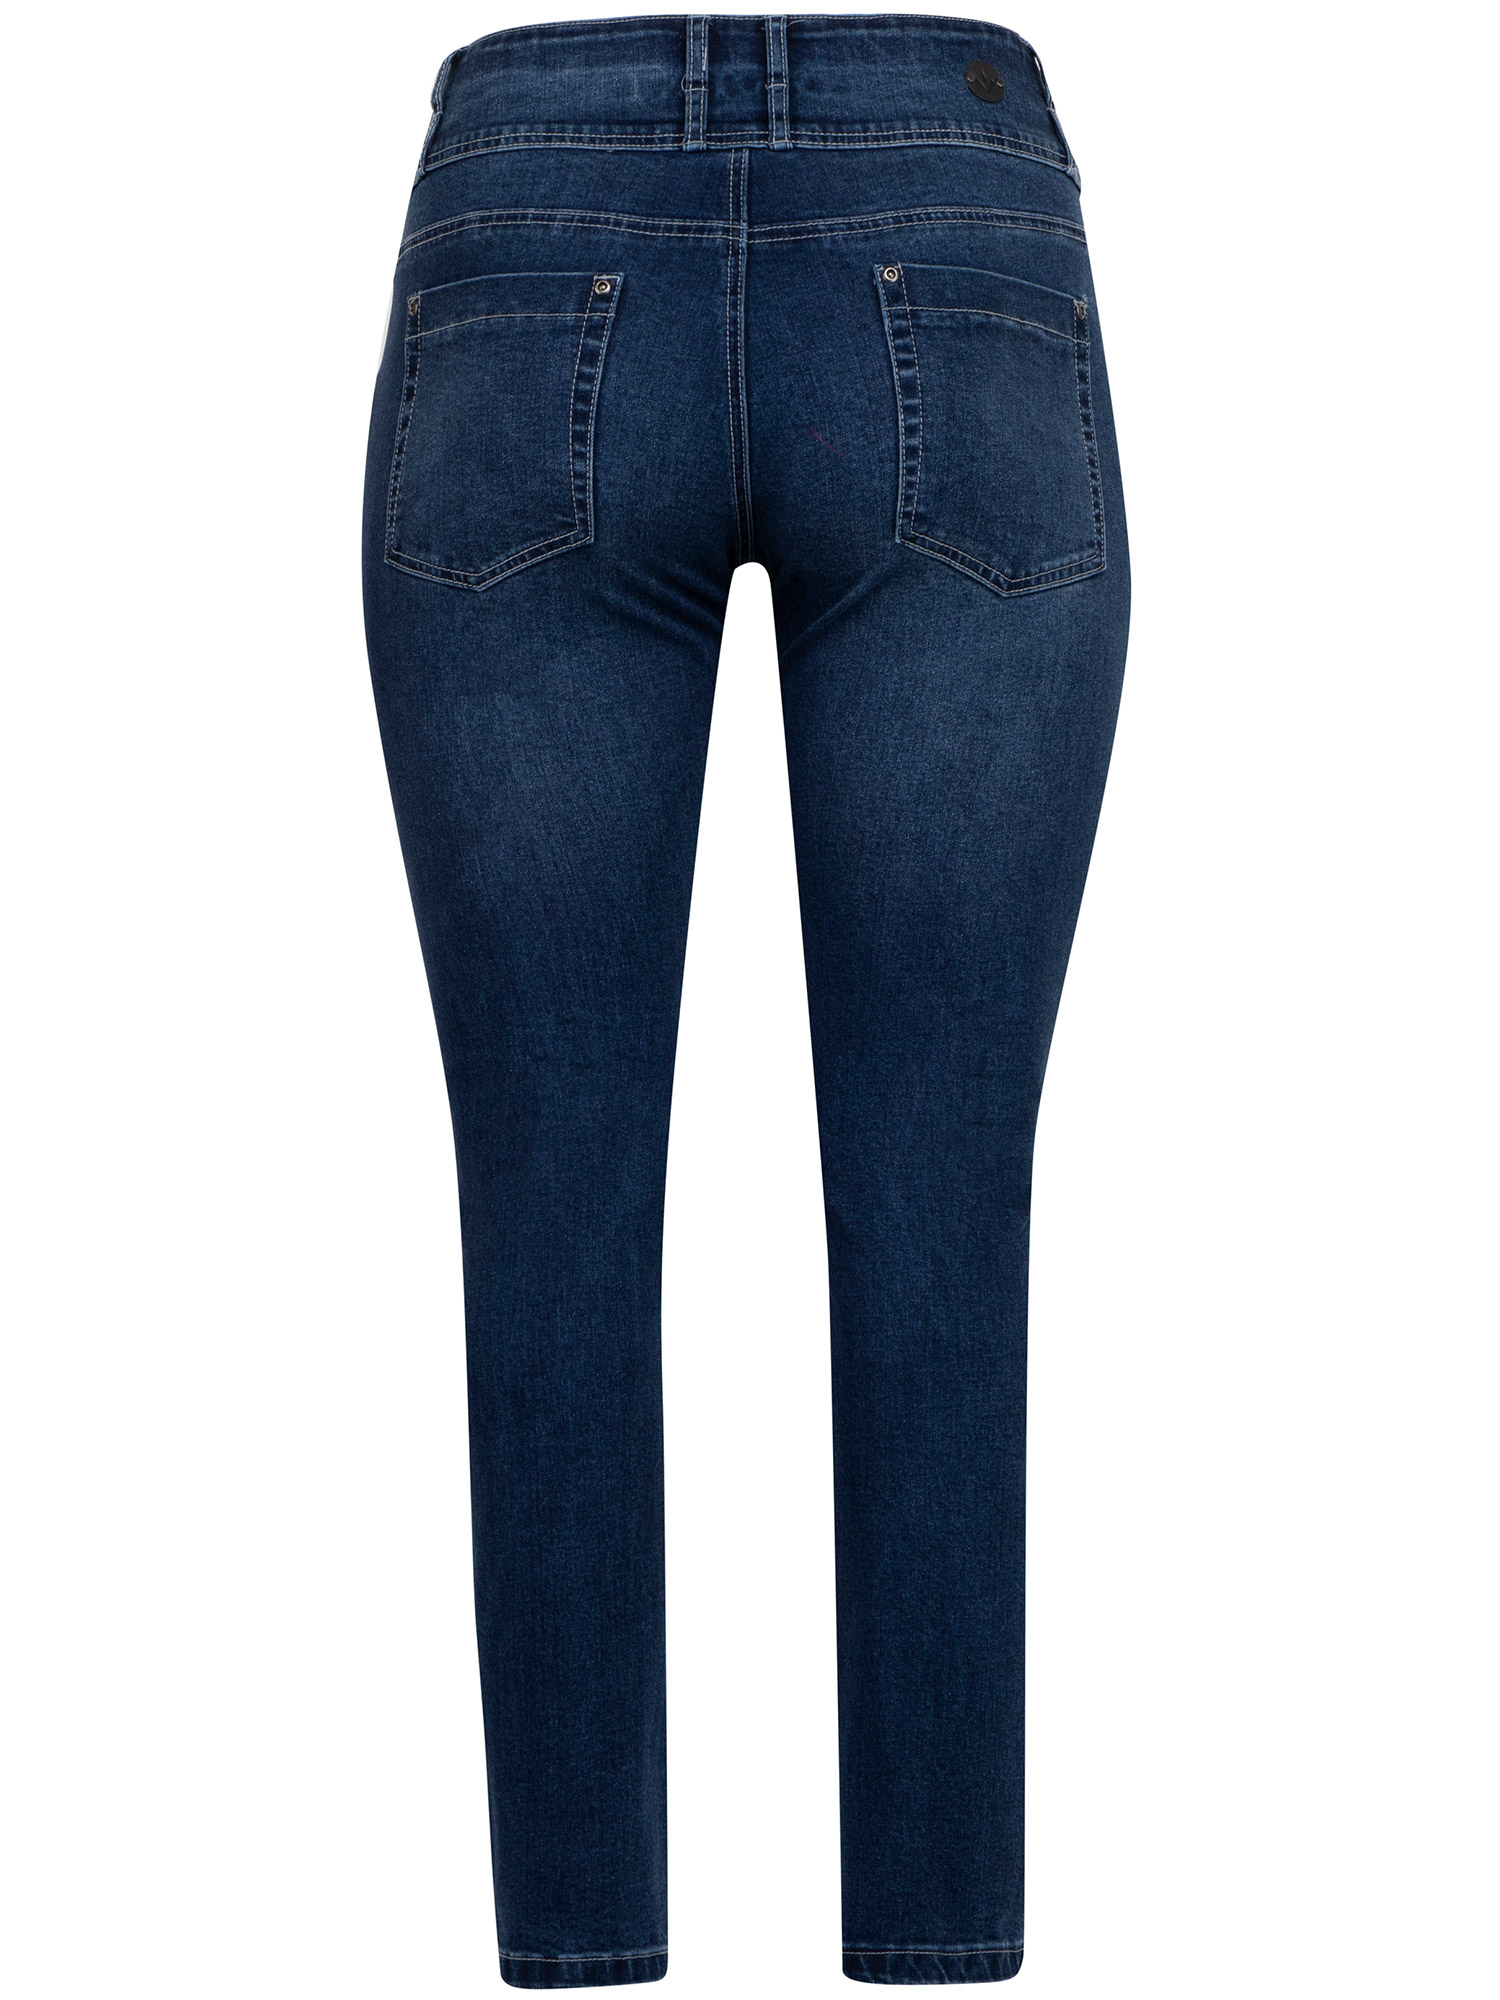 ROME - Blå jeans med bred linning fra Adia